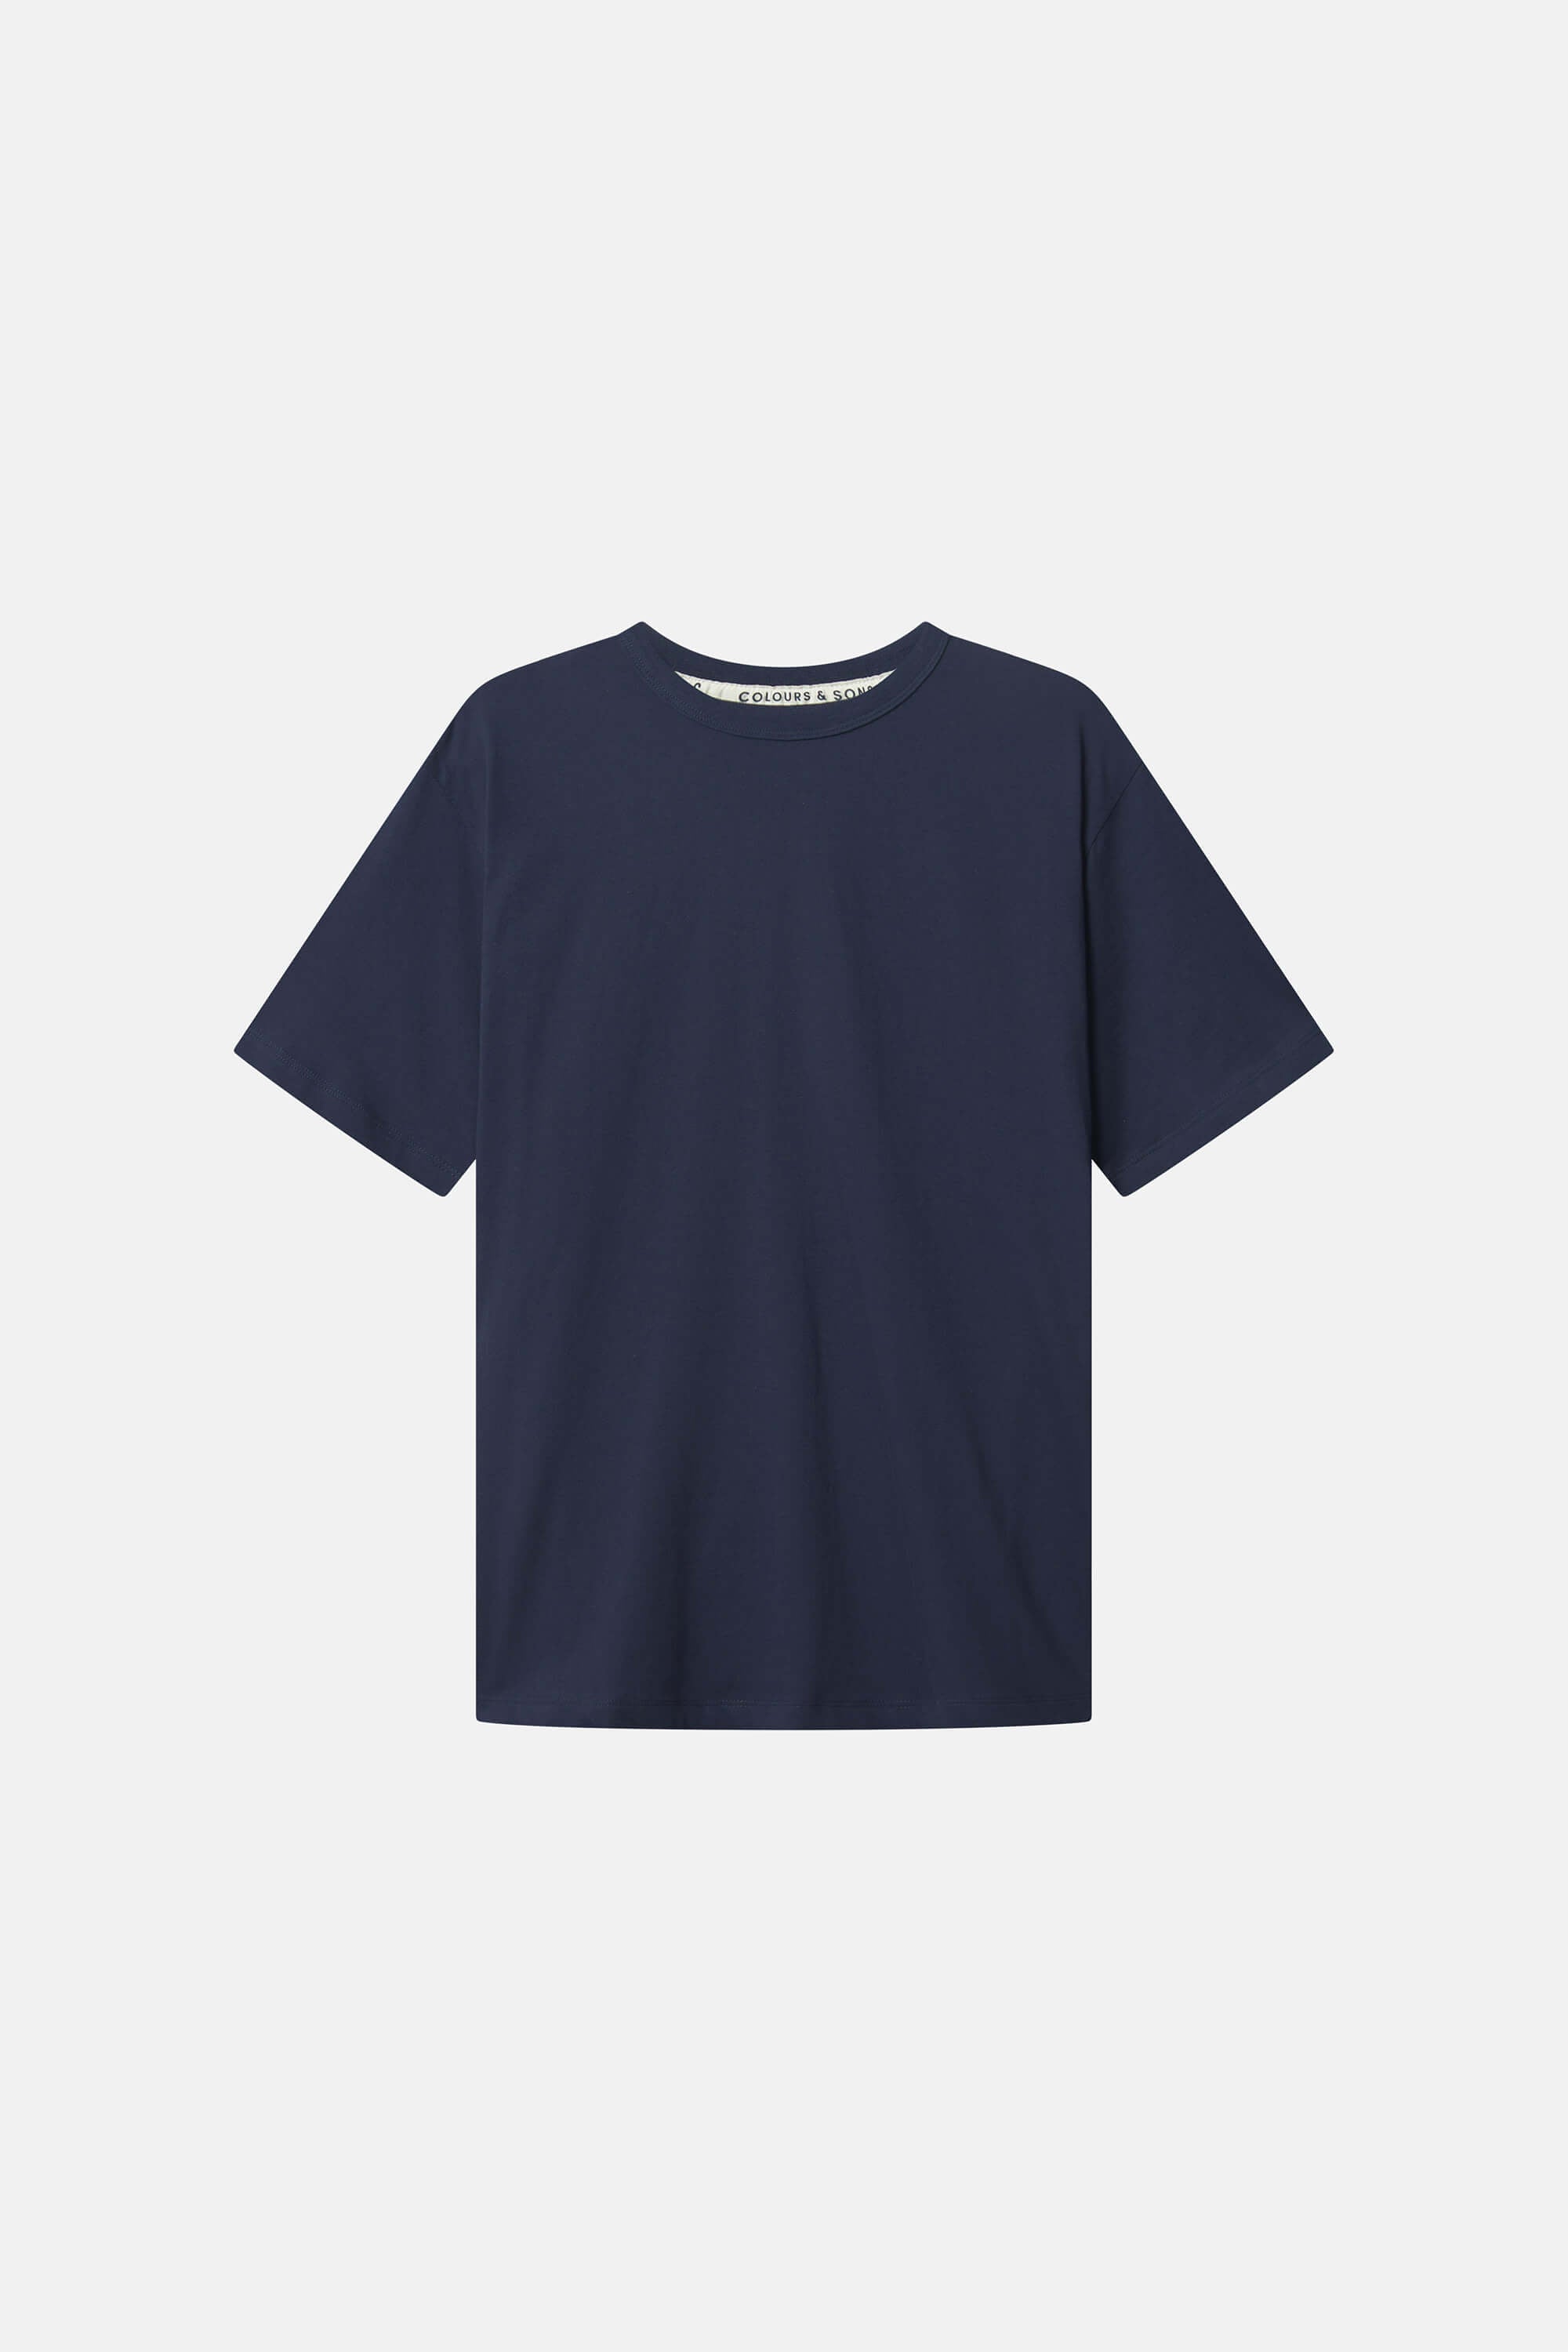 Herren T-Shirt, navy, 100% Baumwolle  von Colours & Sons